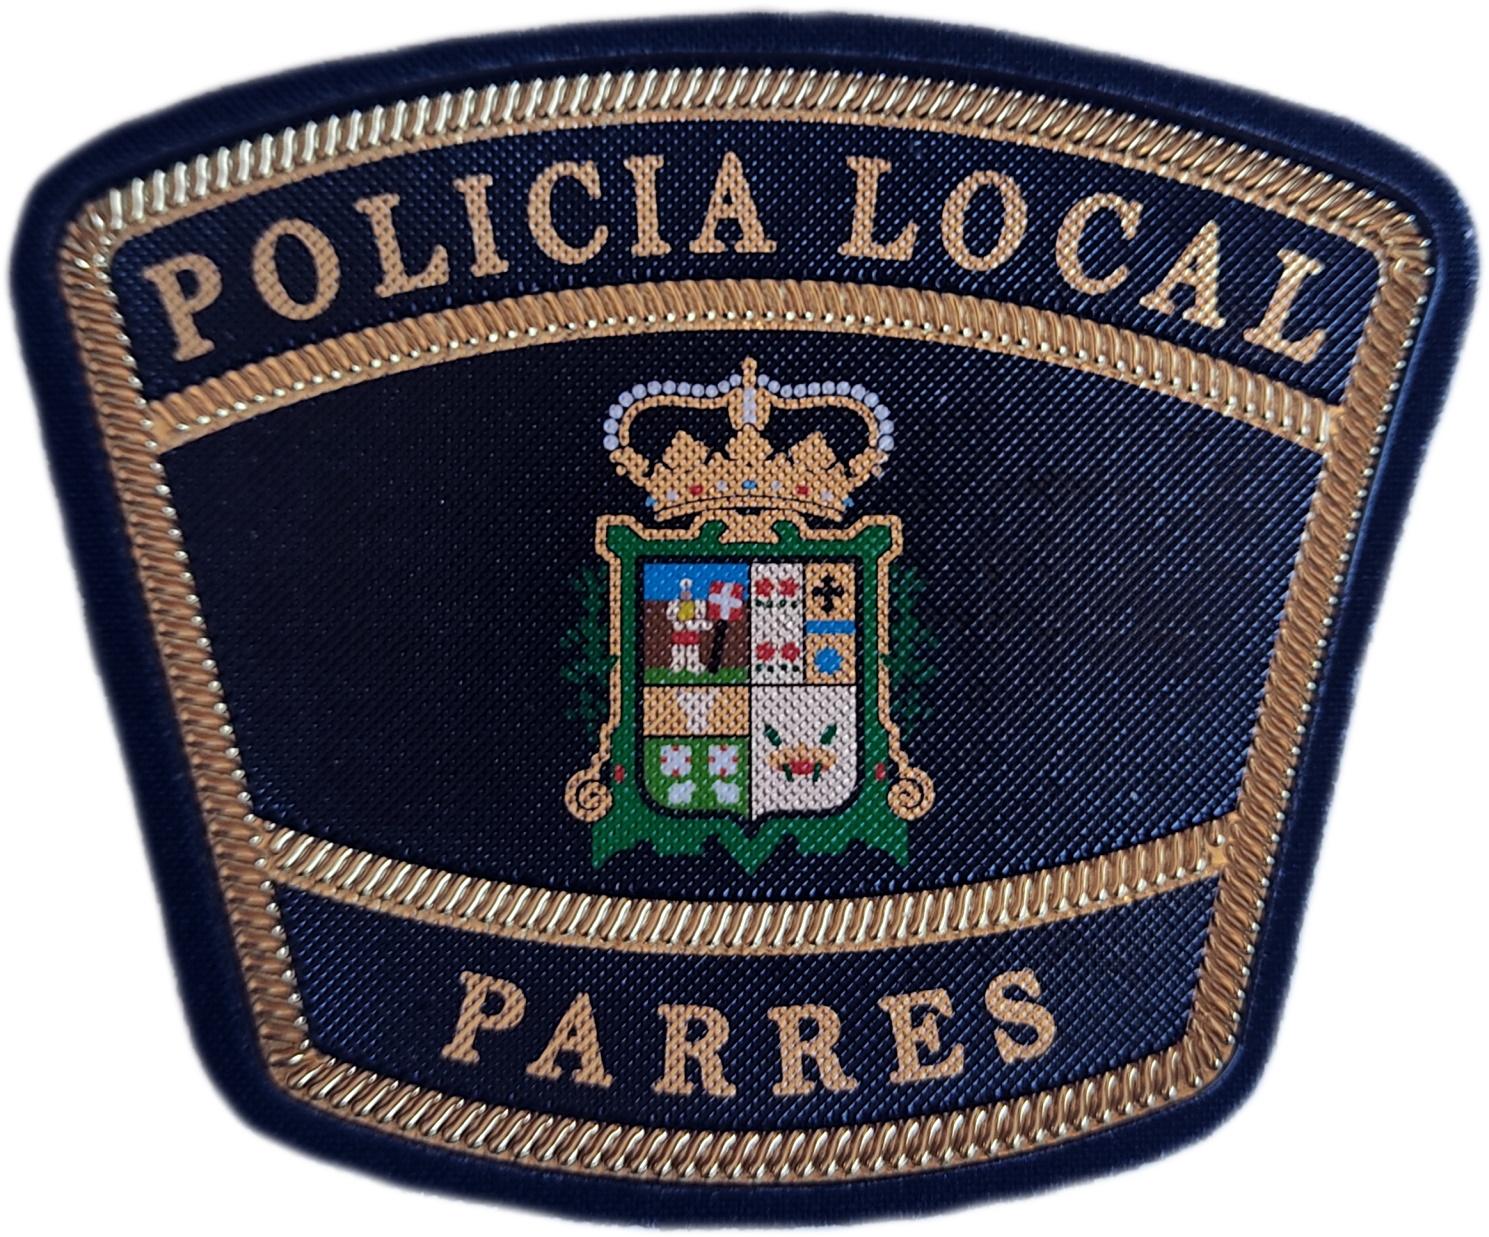 Policía Local Parres Asturias parche insignia emblema distintivo Police Dept